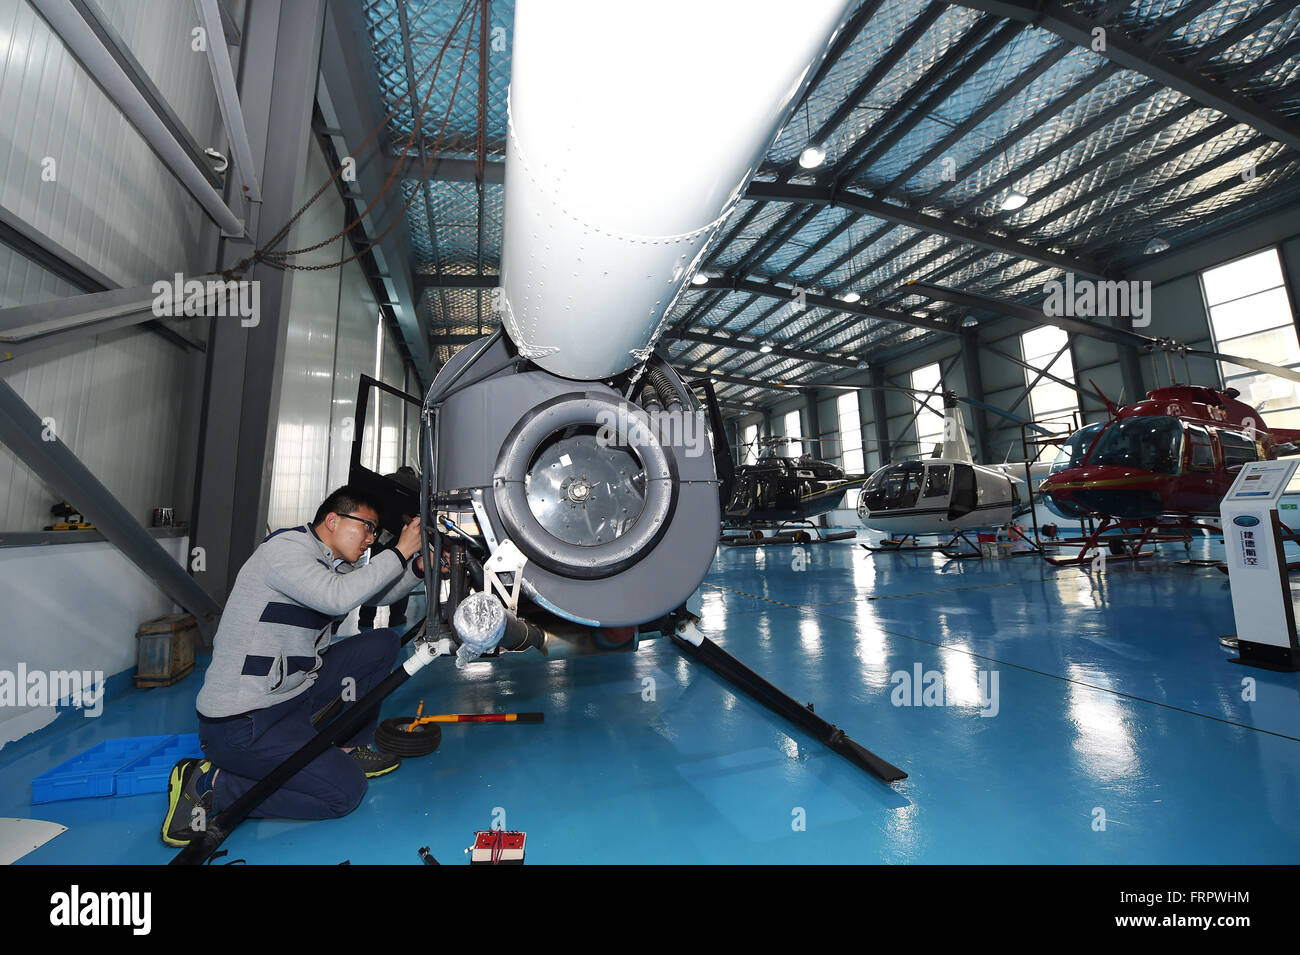 Ningbo, province de Zhejiang en Chine. Mar 23, 2016. Techniciens maintenir un hélicoptère Robinson RAVEN pour les clients au centre de Shanghai de Yida Aero dynamique générale Tech. Company (GDAT), un aéronef général magasin 5S, à la zone portuaire sous douane Meishan à Ningbo, province de Zhejiang en Chine orientale, le 23 mars 2016. L'aéronef magasin 5S, qui a été inaugurée le 8 avril 2015, a vendu 88 hélicoptères par ici. Le magasin fournit plus de 20 types d'hélicoptères avec prix de vente entre 3 à 100 millions de yuans (1,38 millions de dollars US 461,400-15). Credit : Huang Zongzhi/Xinhua/Alamy Live News Banque D'Images